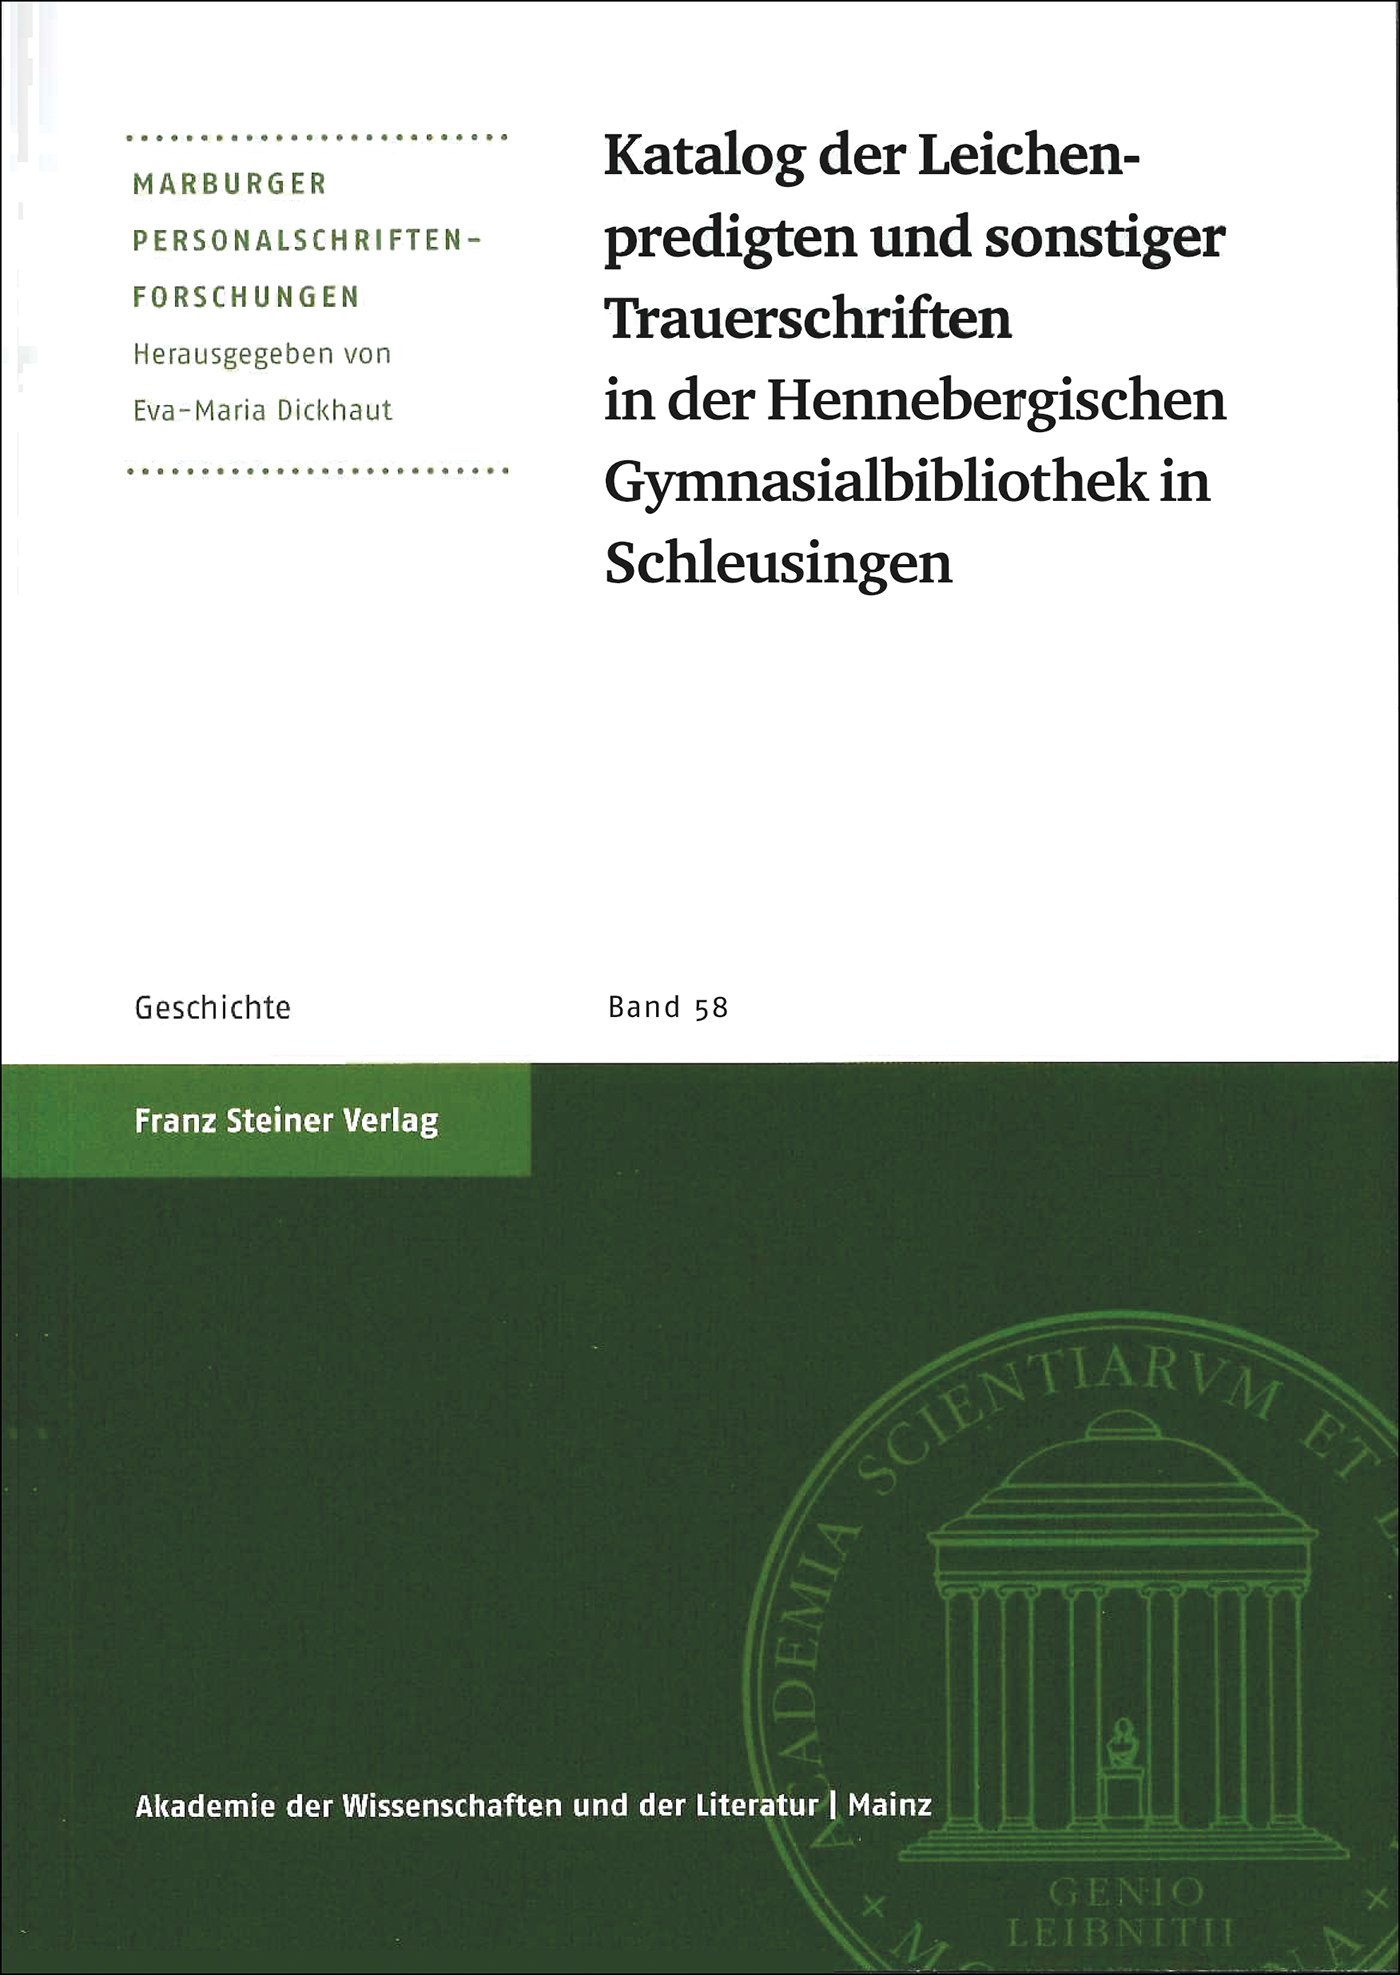 Katalog der Leichenpredigten und sonstiger Trauerschriften in der Hennebergischen Gymnasialbibliothek Schleusingen